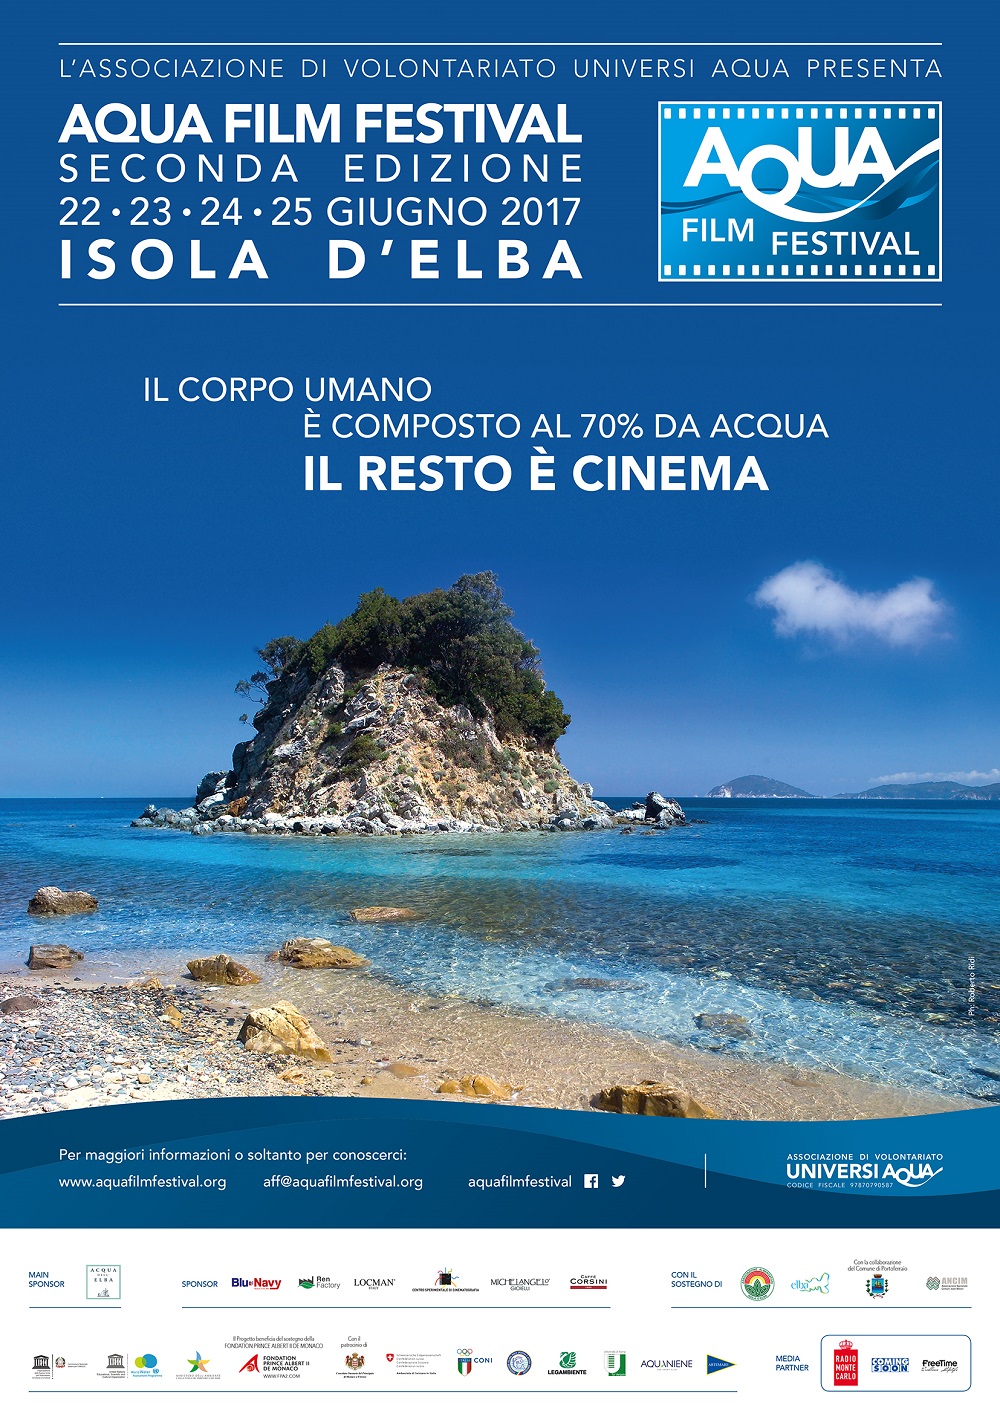 Aqua Film Festival. La cultura dell’acqua attraverso il cinema